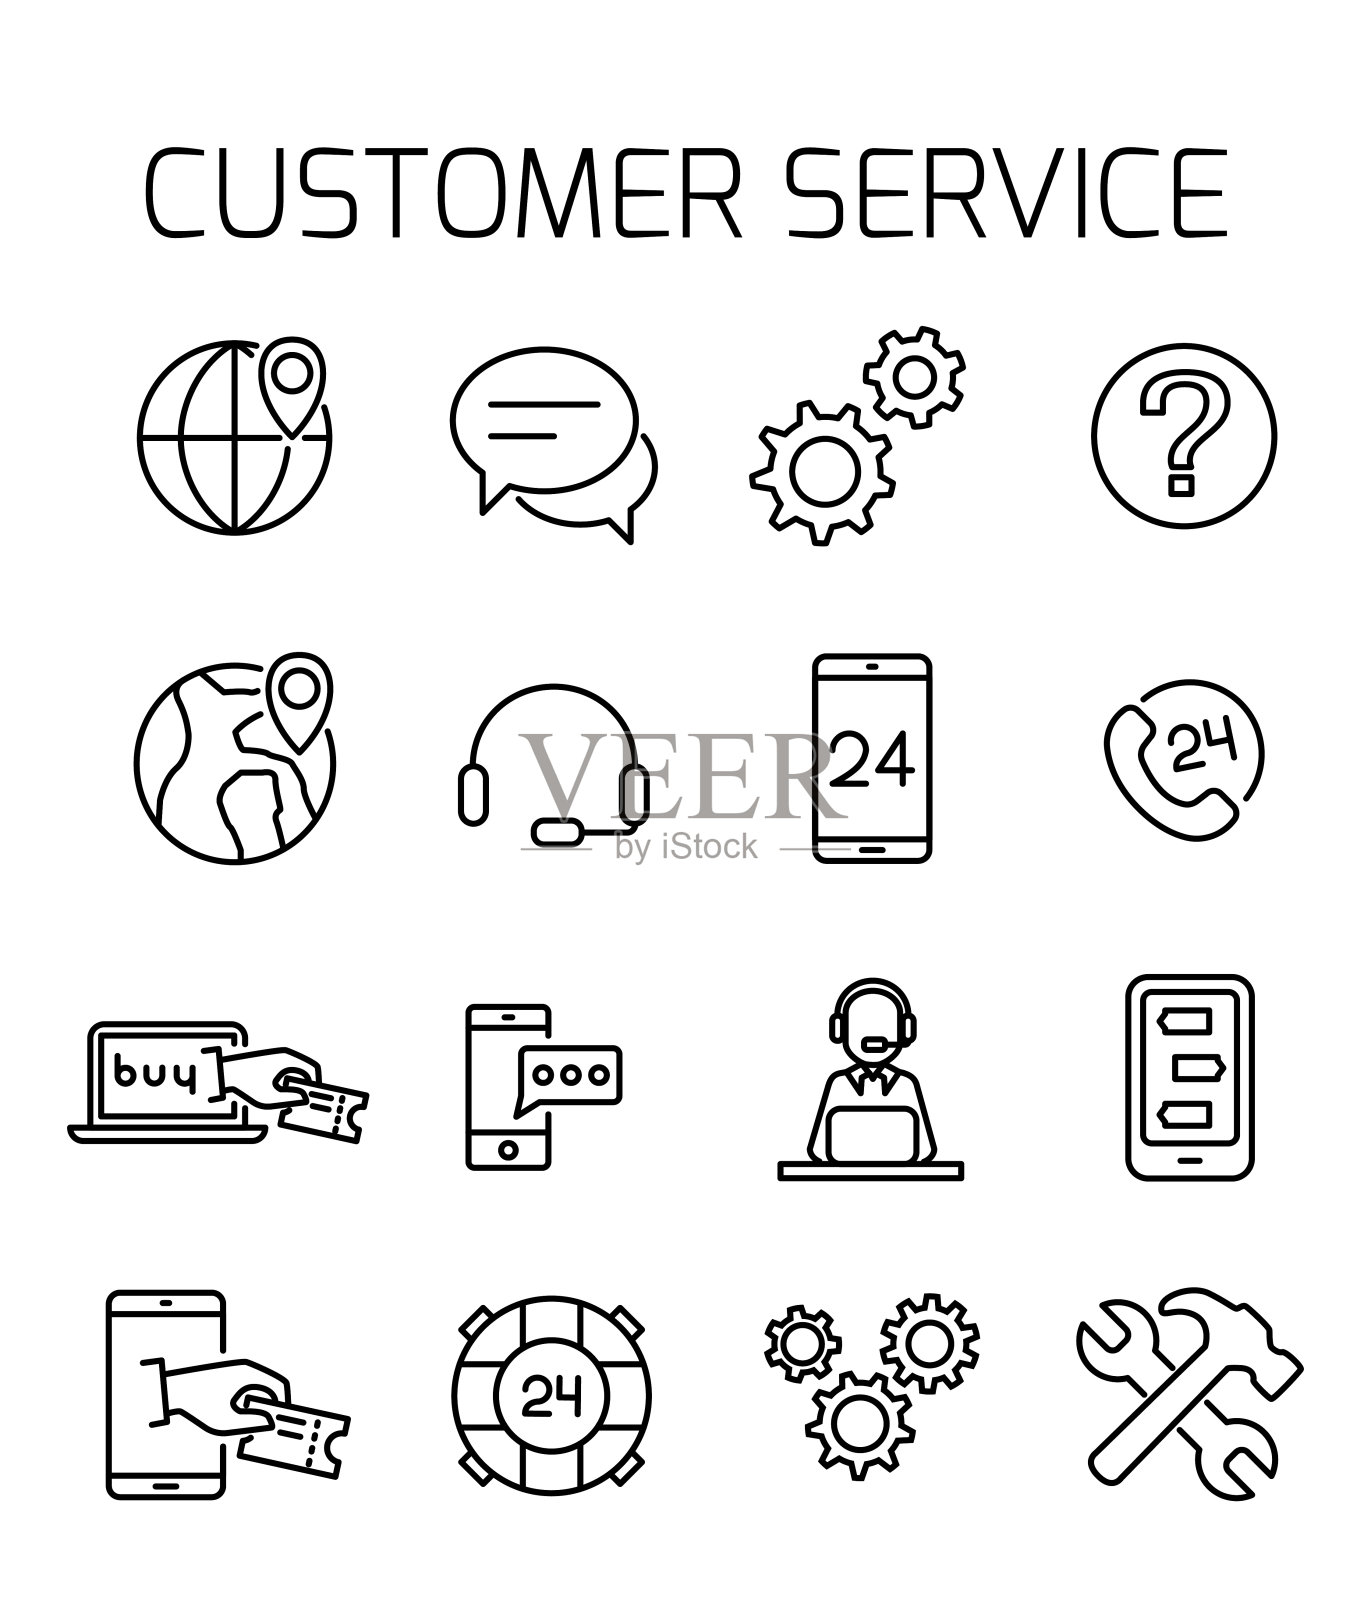 客户服务相关矢量图标集。图标素材